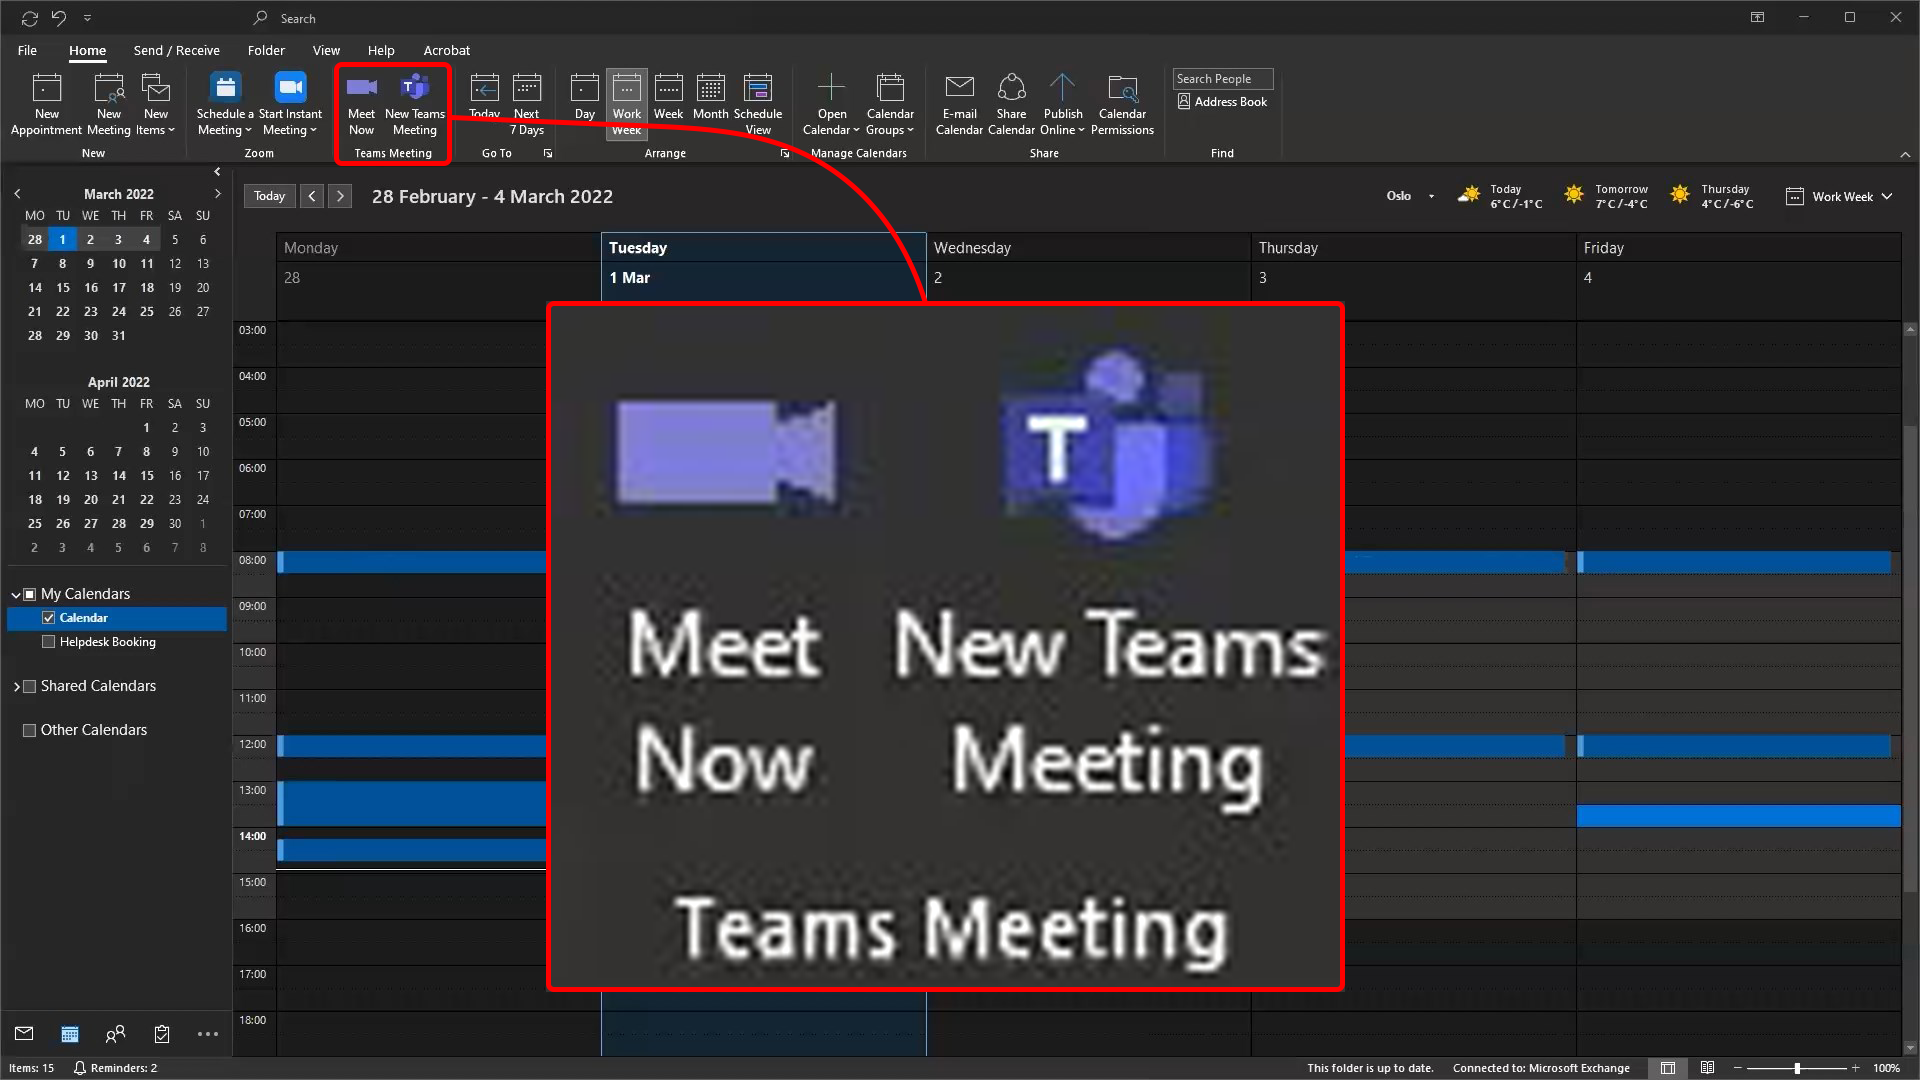 Menyvalg i form av tre prikker øverst til høyre i Microsoft Teams viser "More actions"